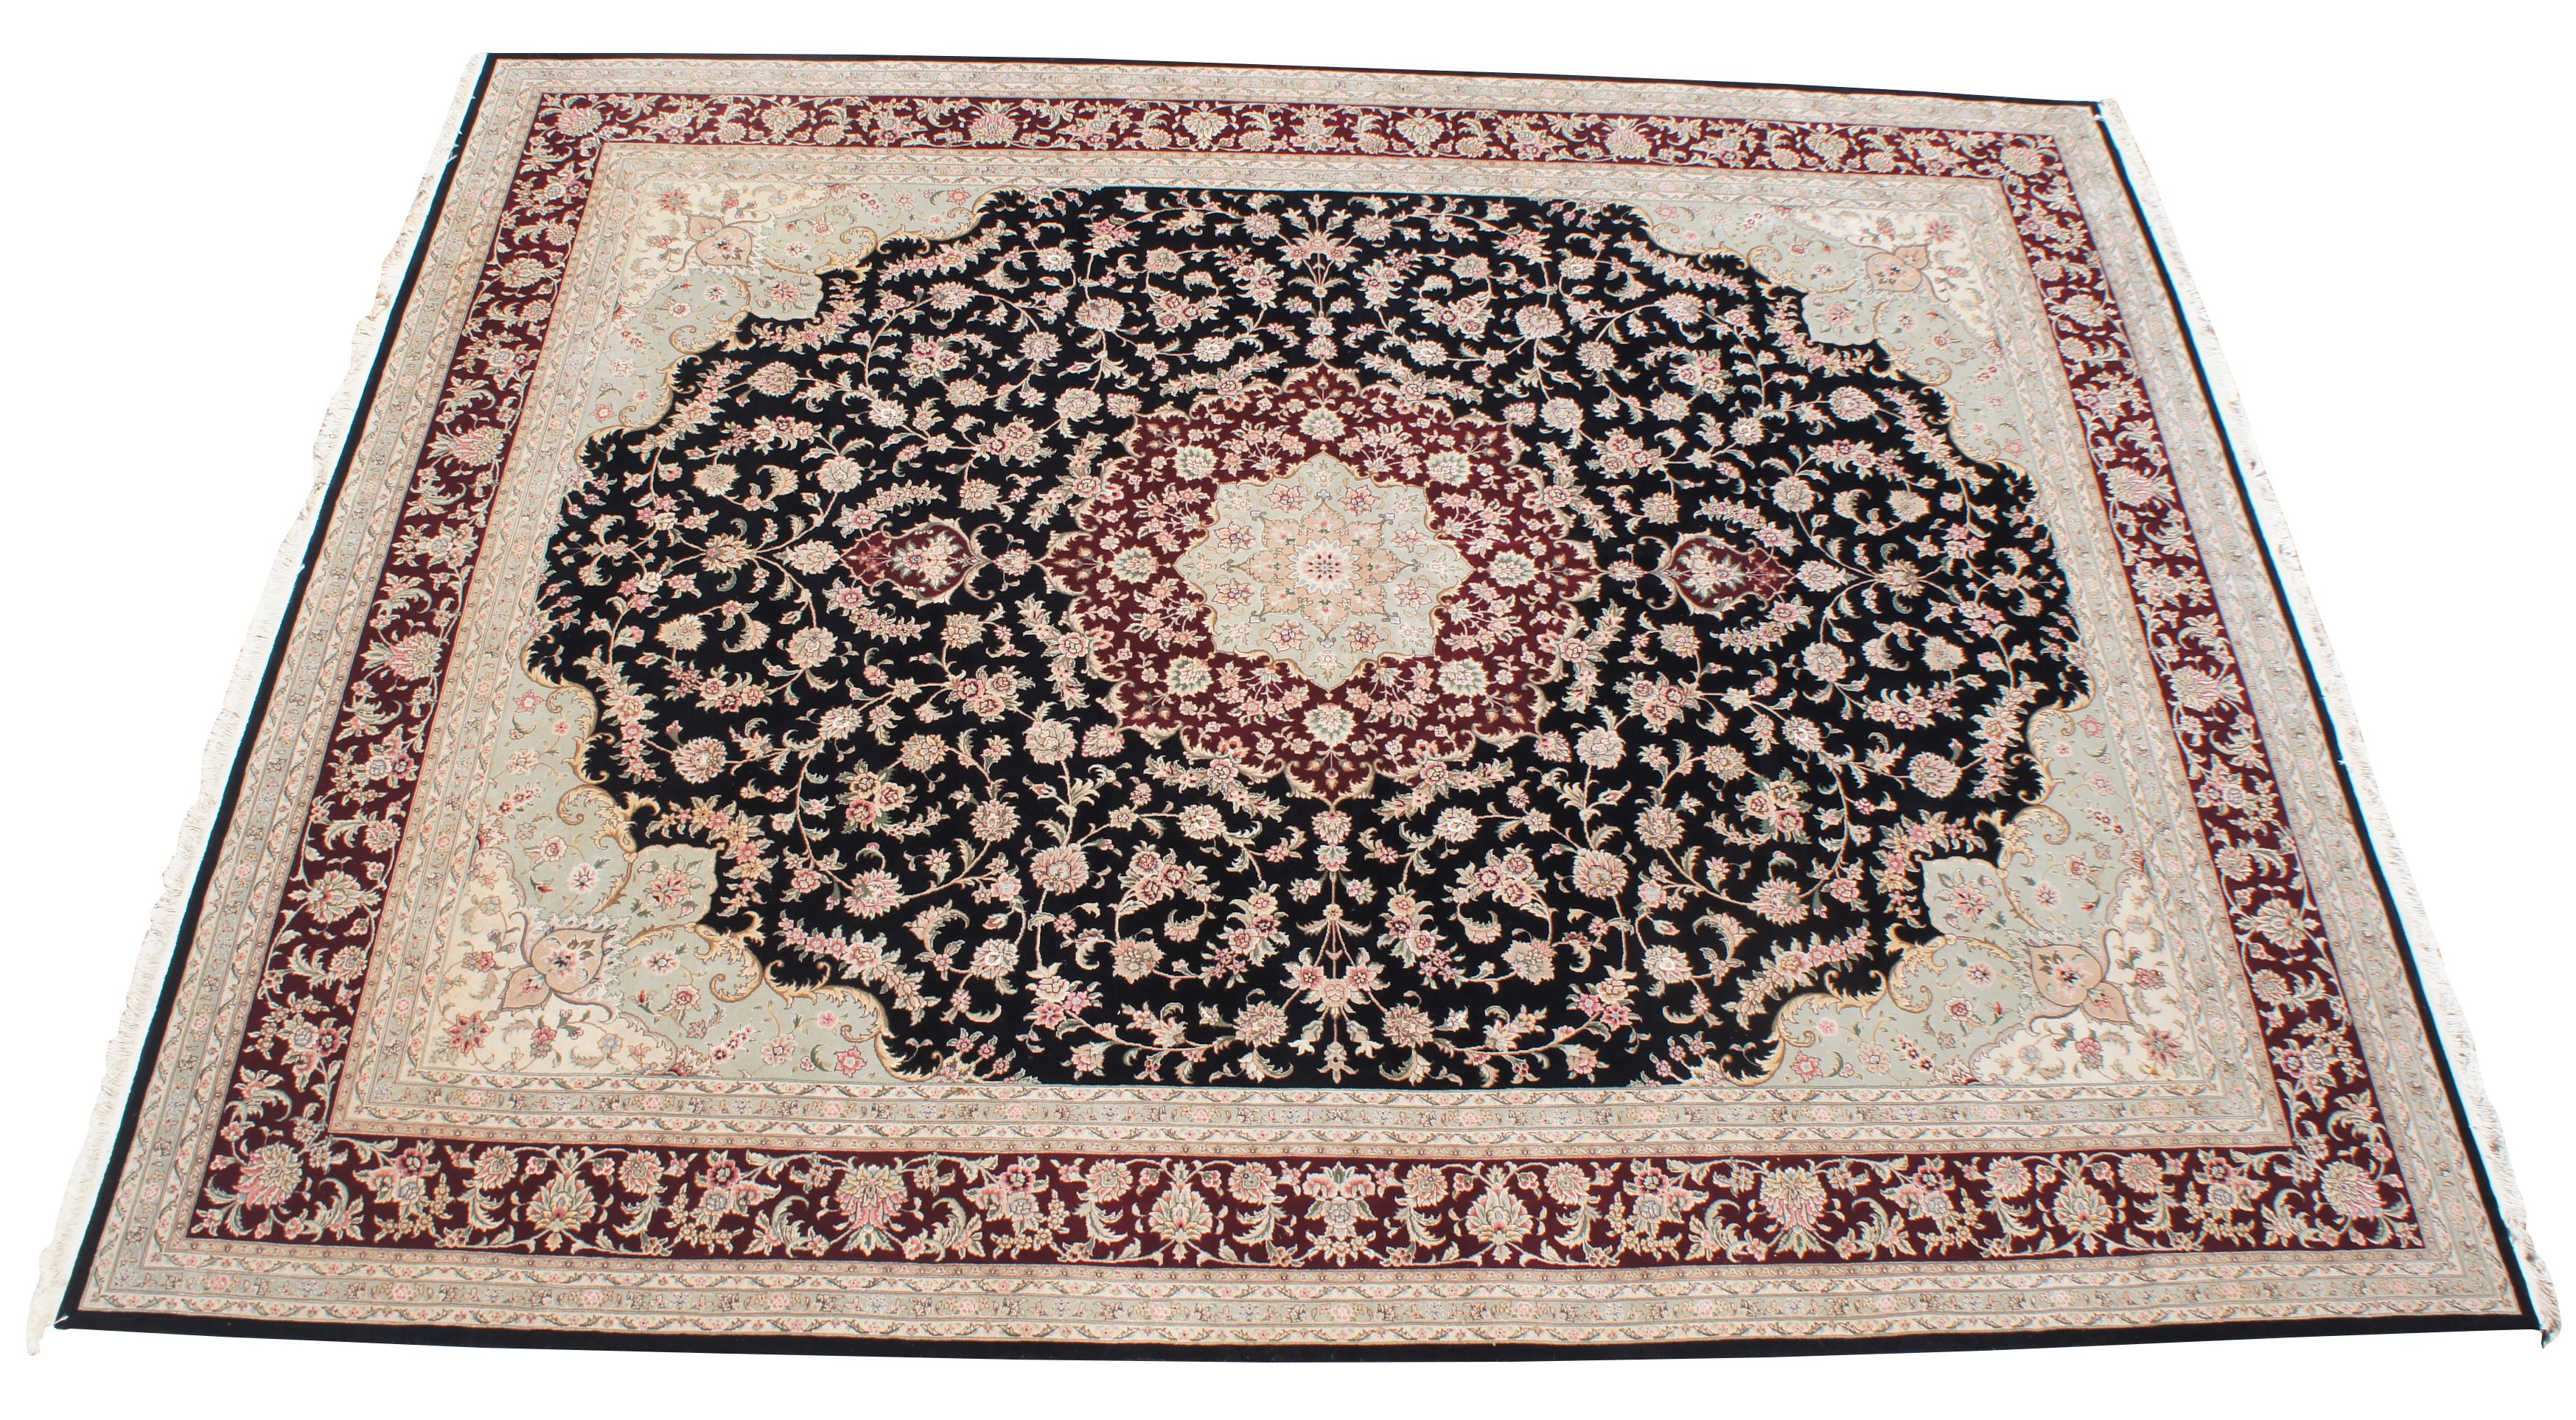 Schöne große 12 'x 15,5' Sino-Persian floral Medaillon Bereich Teppich. Ein schwarzes Feld mit hellbraunen Rändern und Blumen in den Farben Rot, Burgund/Kastanienbraun, Grün/Oliv, Rosa und Hellbraun. Maße: 12' x 16'.
   